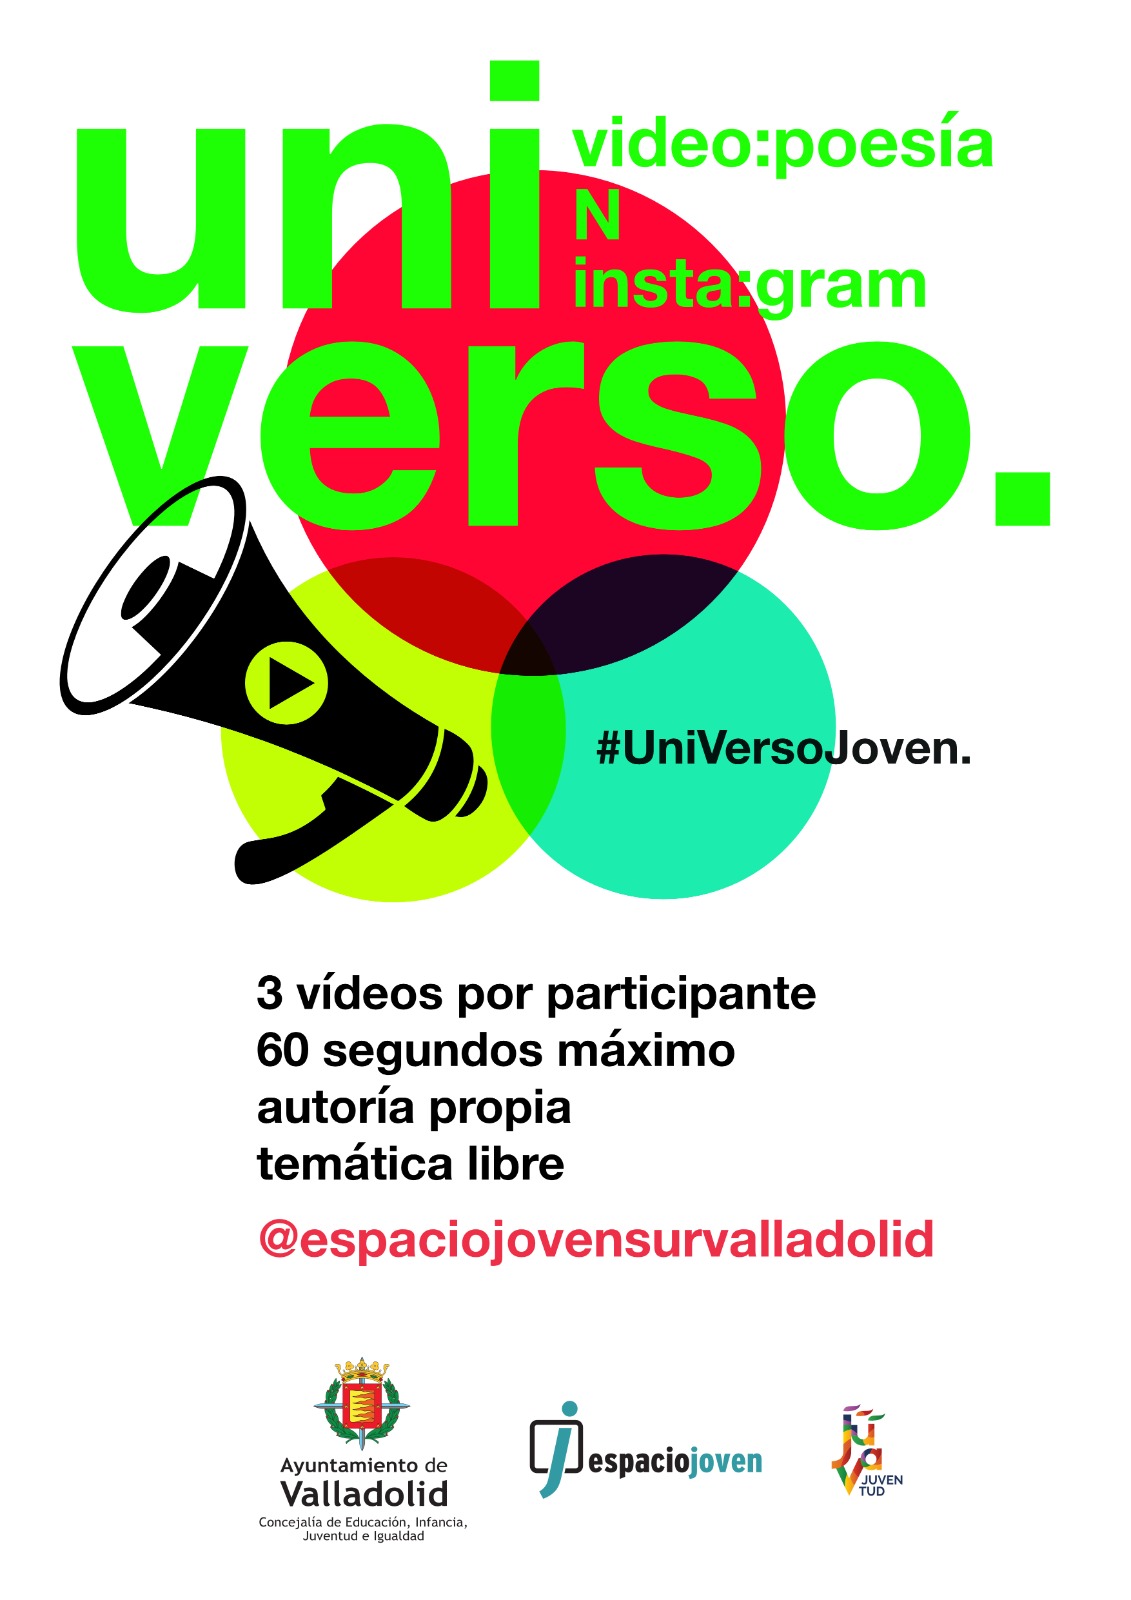 I concurso de videopoesía en Instagram "UniVerso Joven". Del 9 de noviembre al 31 de diciembre de 2021